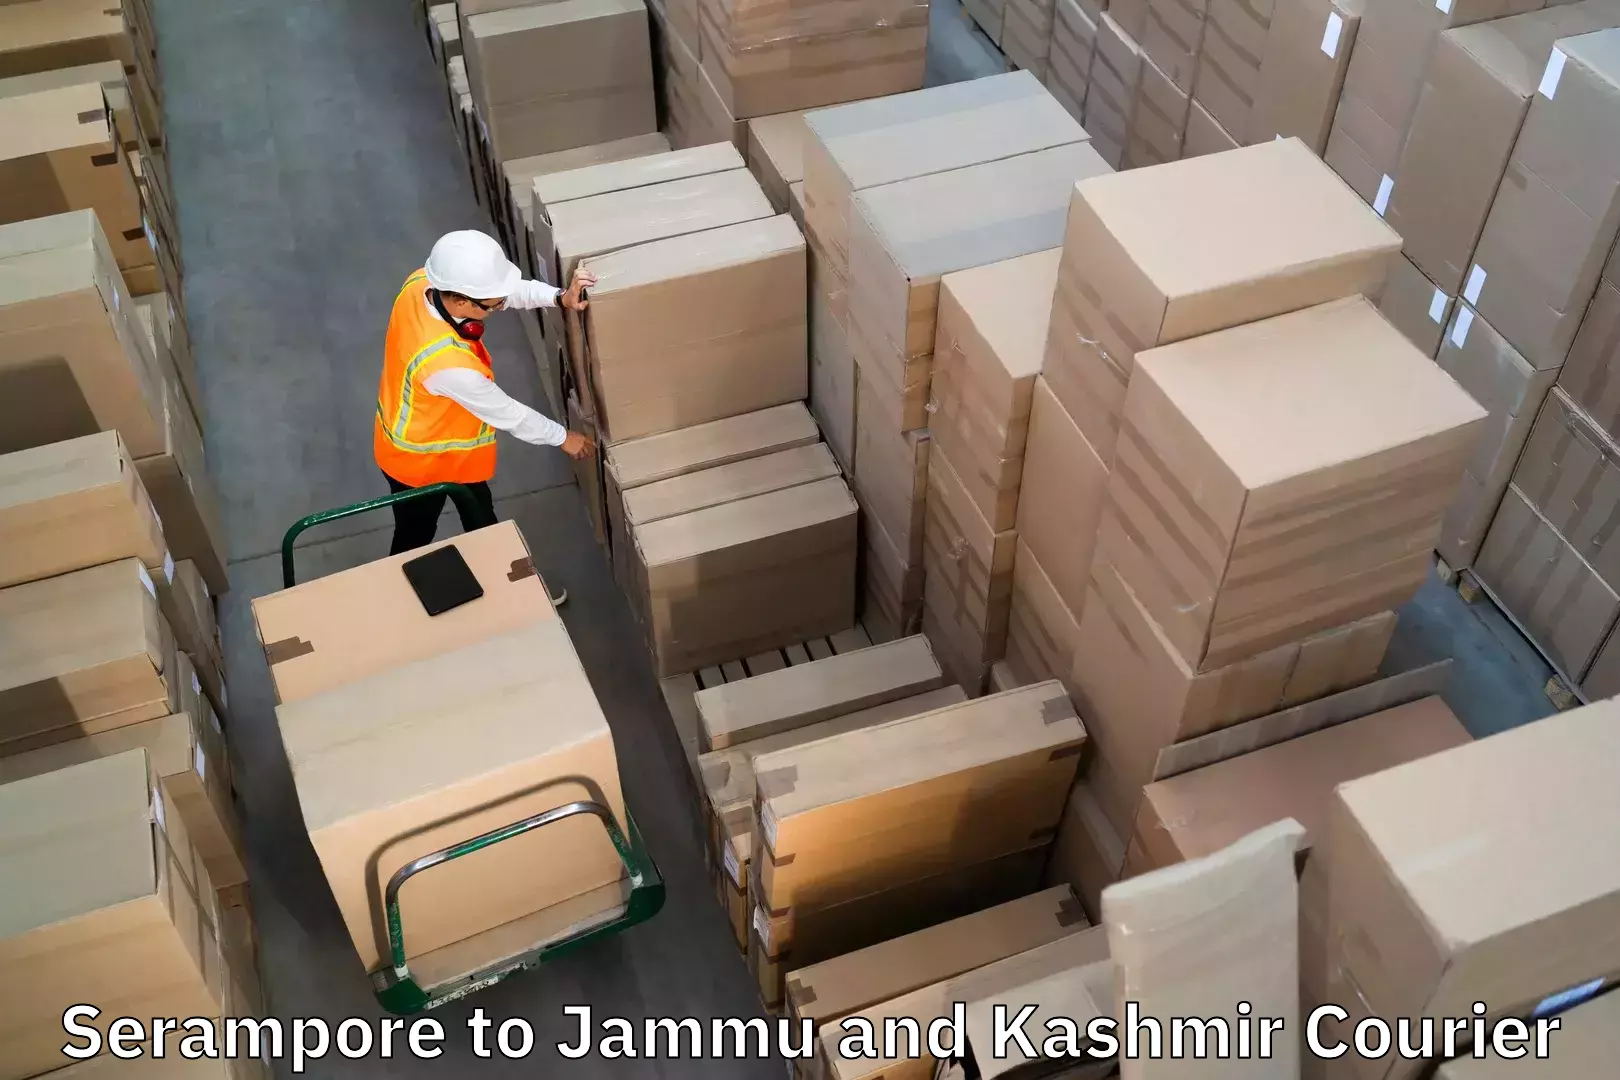 Baggage shipping experts Serampore to Bandipur